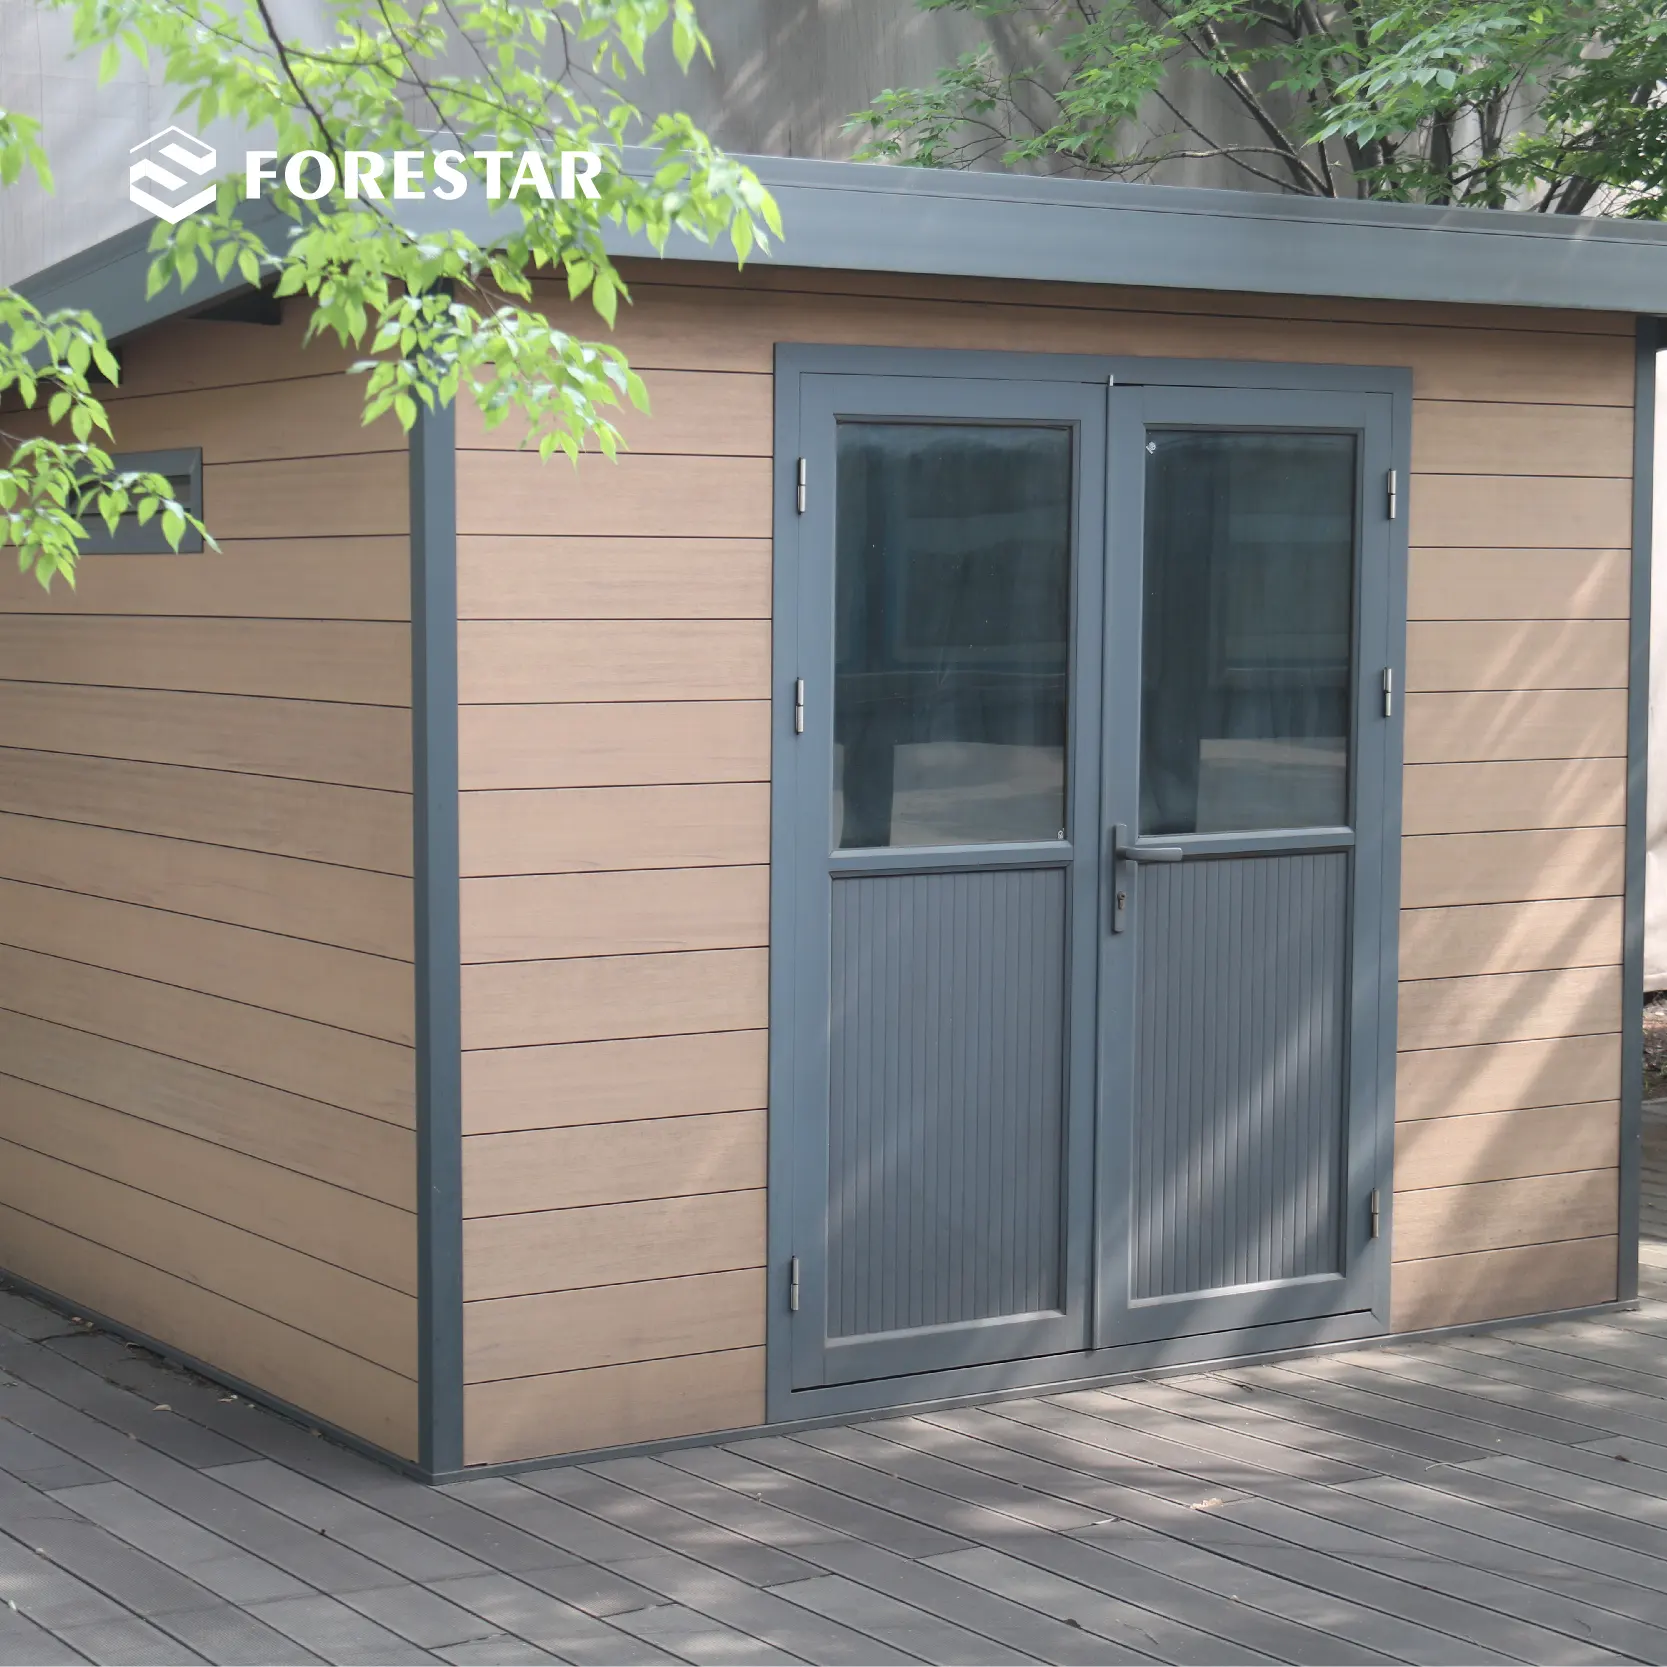 M série nova europa exterior plana de madeira plástico composto jardim shed